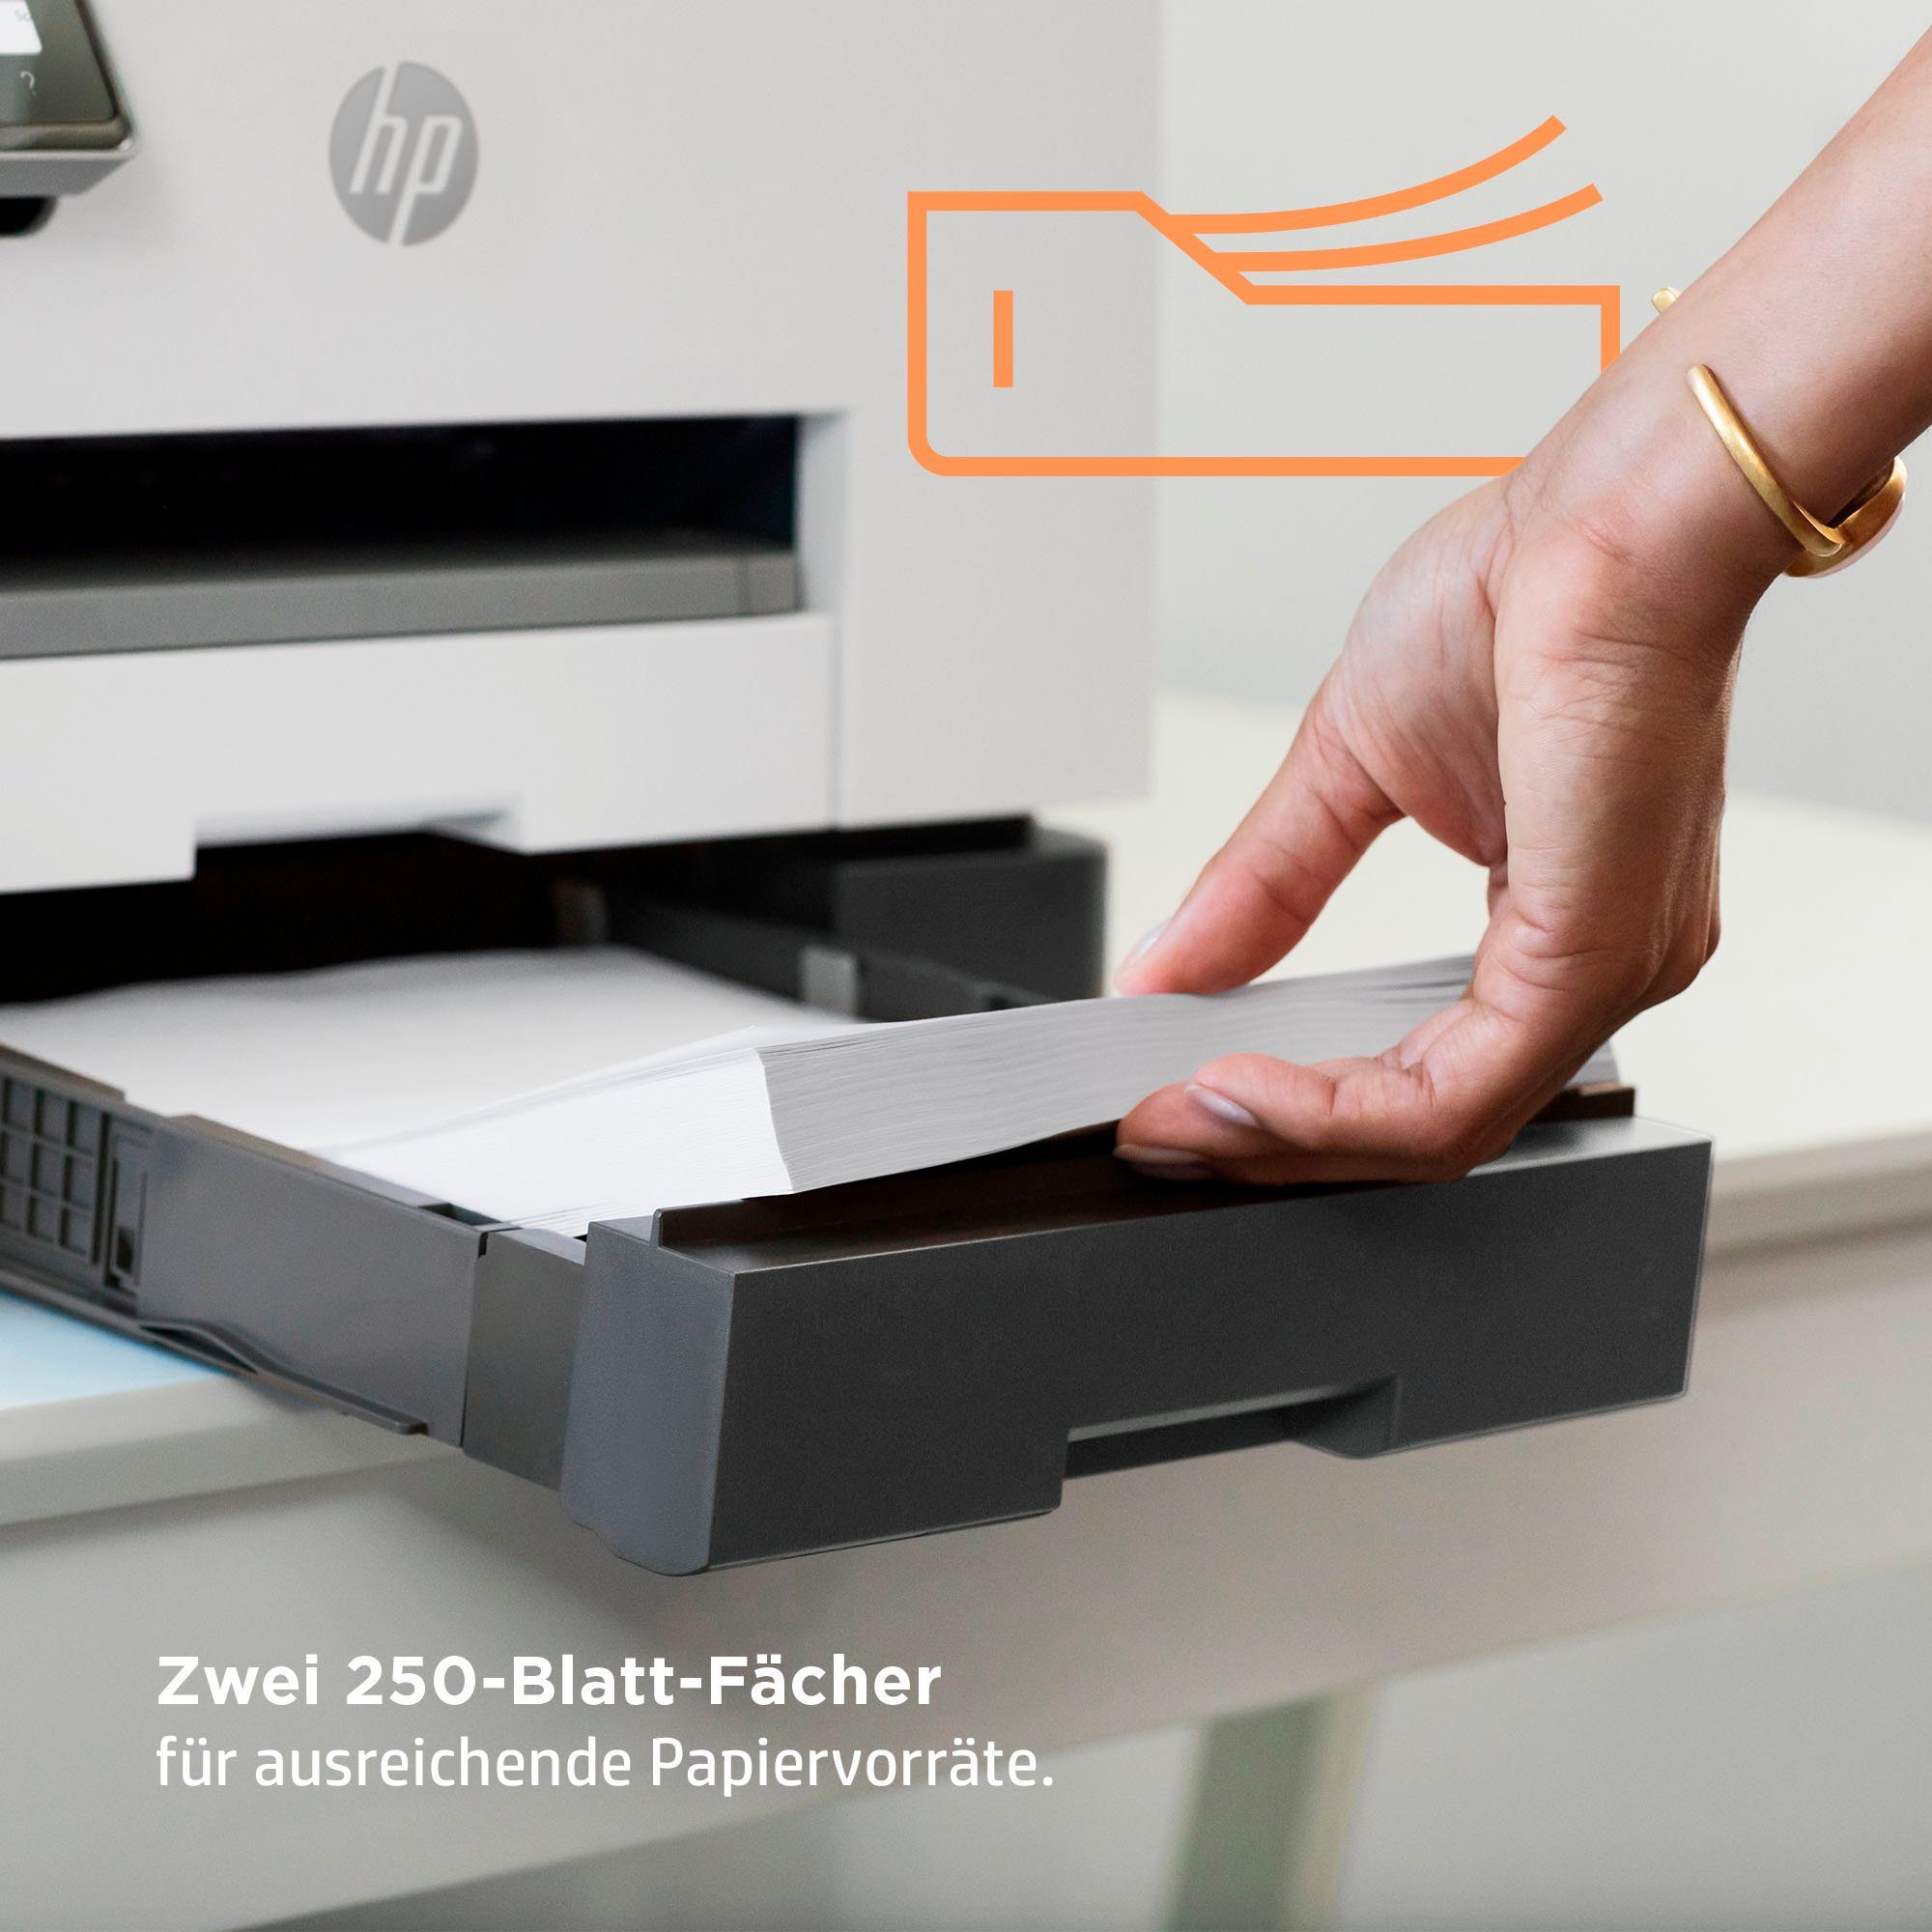 9022e color Multifunktionsdrucker, (LAN Instant Pro A4 AiO HP Ink OfficeJet WLAN HP+ kompatibel) (Wi-Fi), (Ethernet),